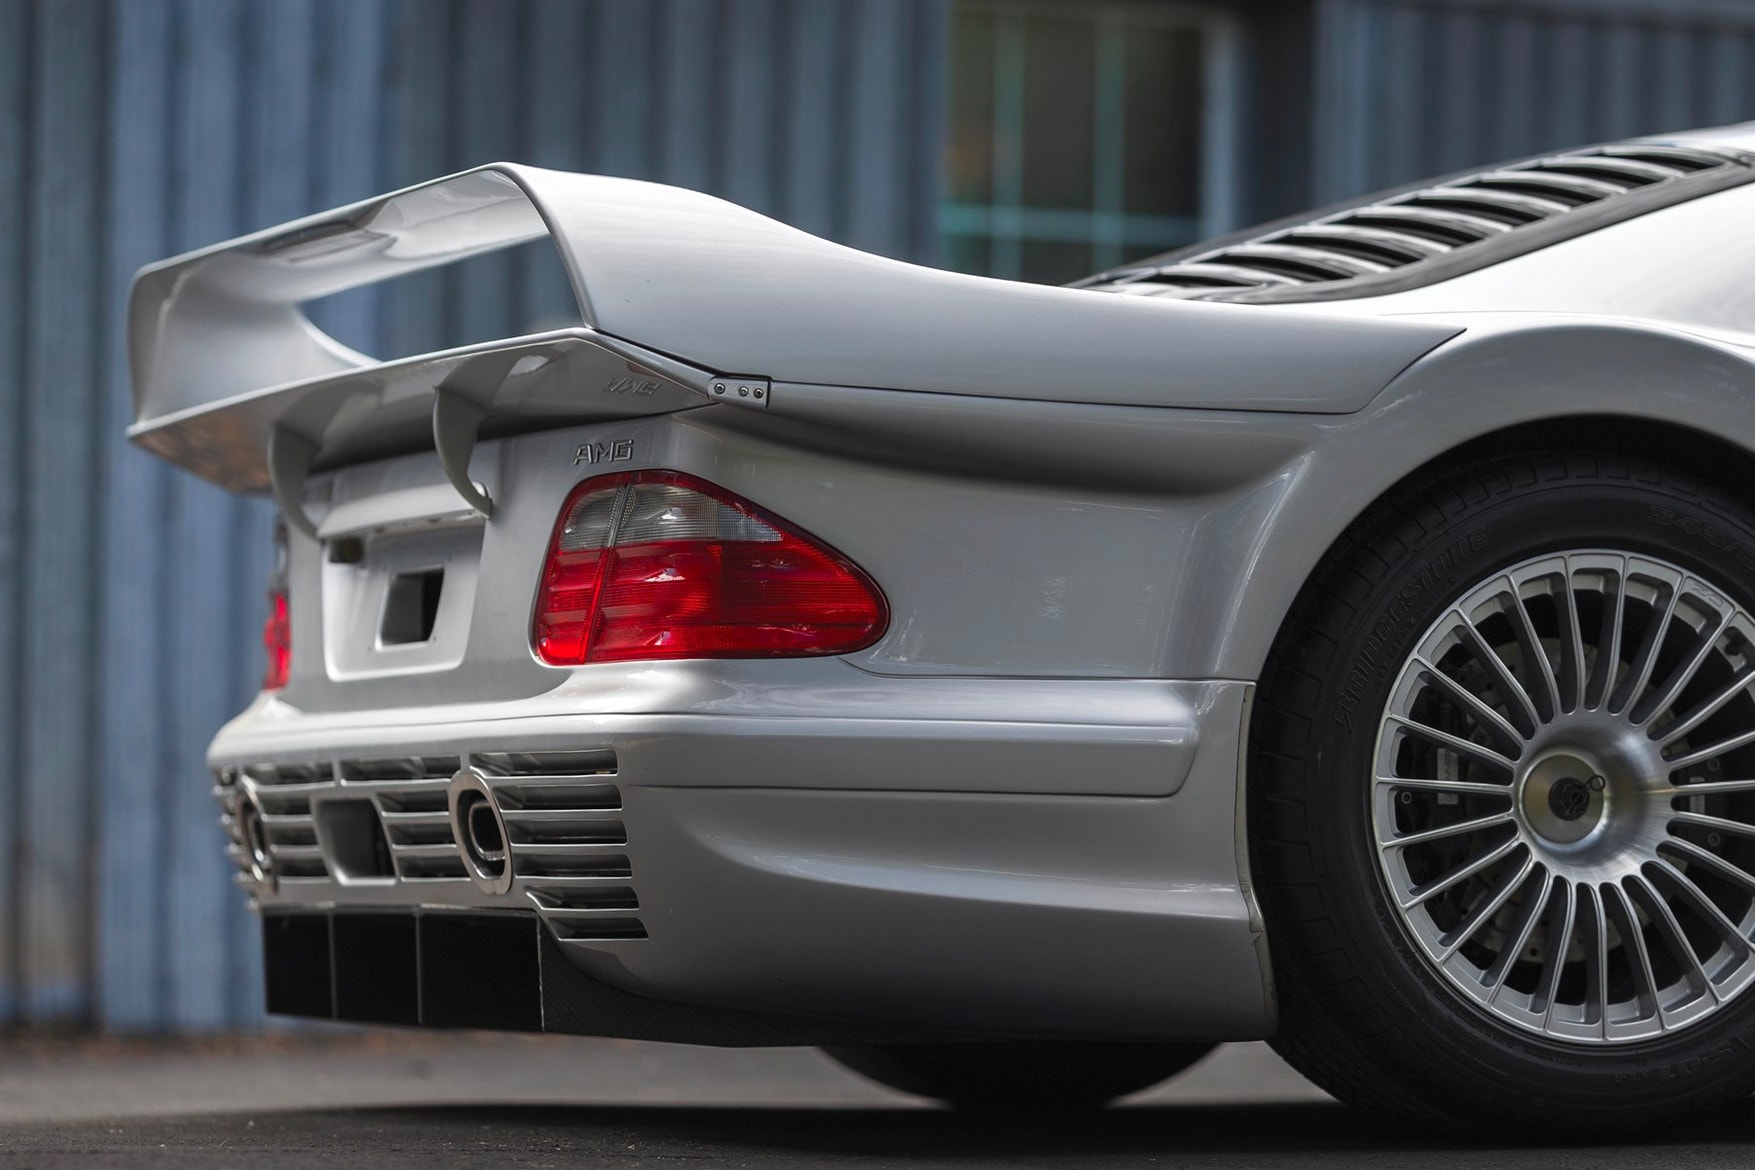 1998 年產 Mercedes-Benz AMG CLK GTR 跑車將公開拍賣